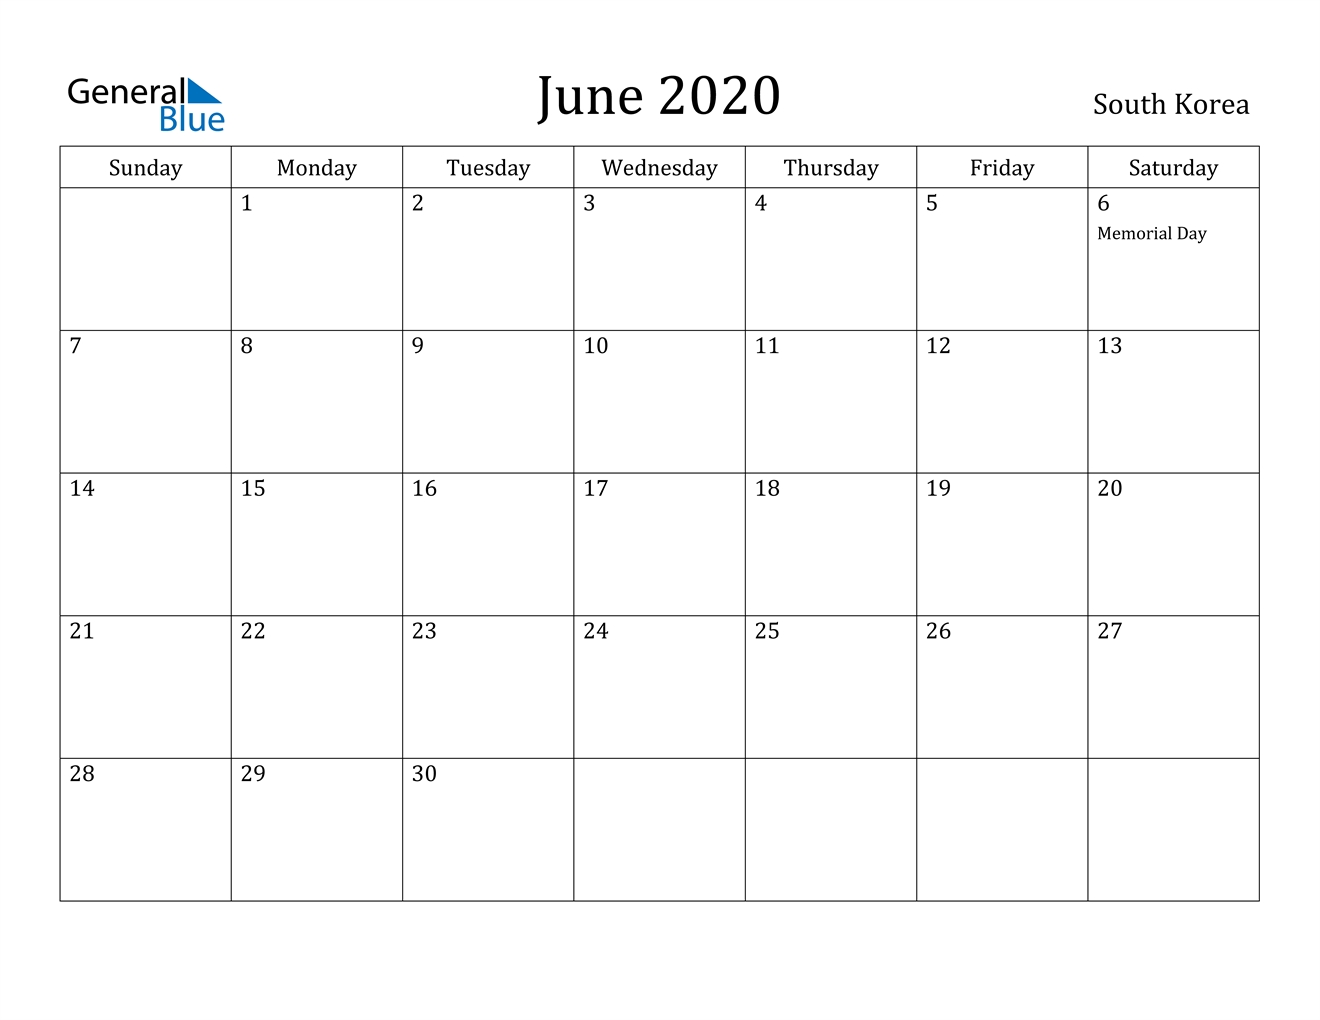 June 2020 Calendar - South Korea June 2020 Calendar With Holidays